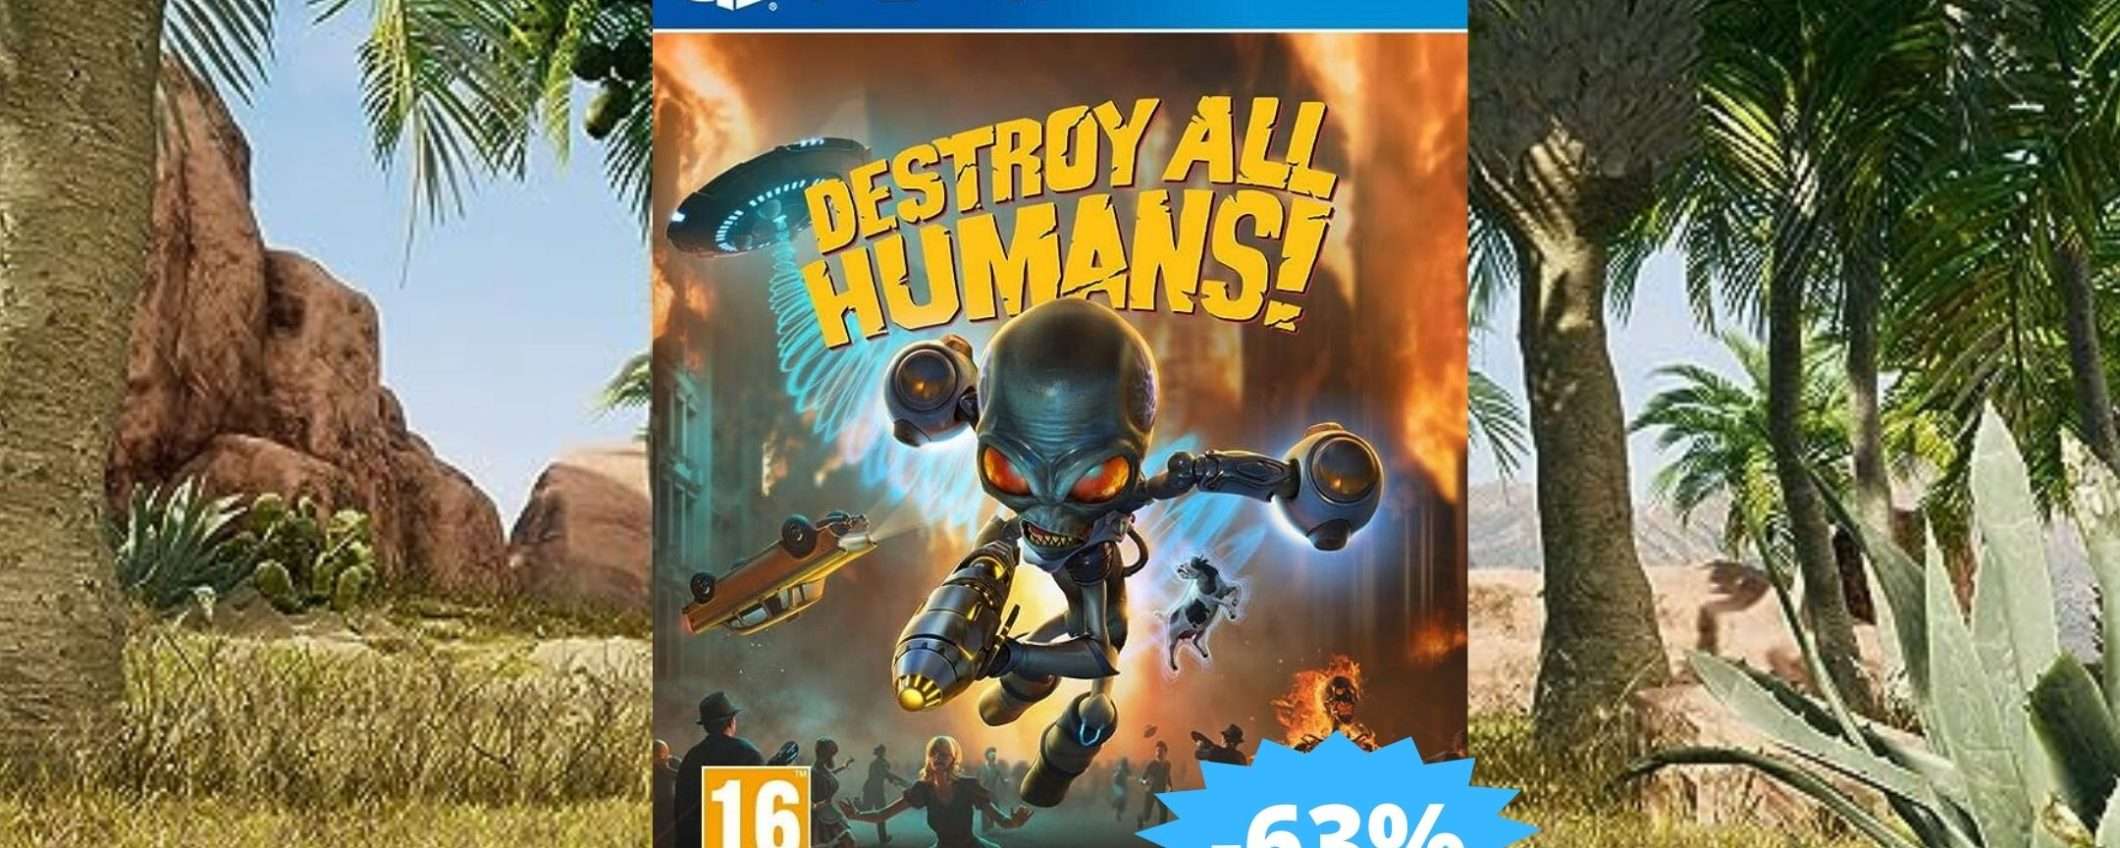 Destroy All Humans per PS4: sconto FOLLE del 63% su Amazon